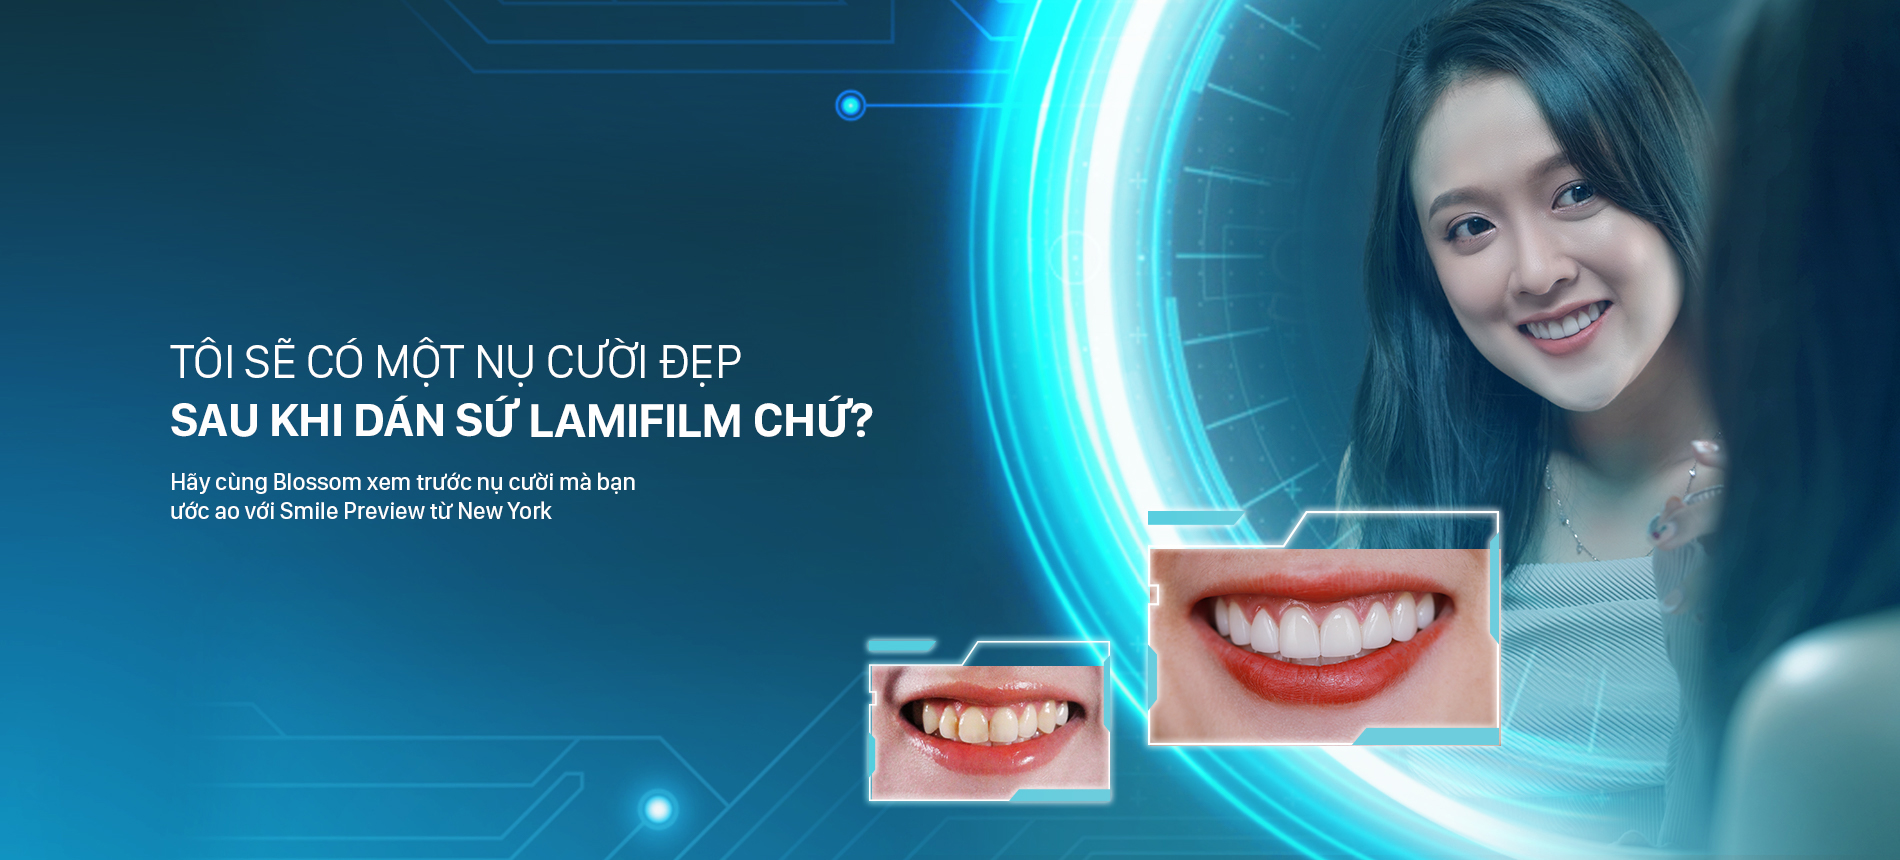 Kỹ thuật Smile Preview – Xem trước nụ cười blossom clinic Dán sứ Blossom LamiFilm không mài Trồng răng Implant Niềng răng Invisalign